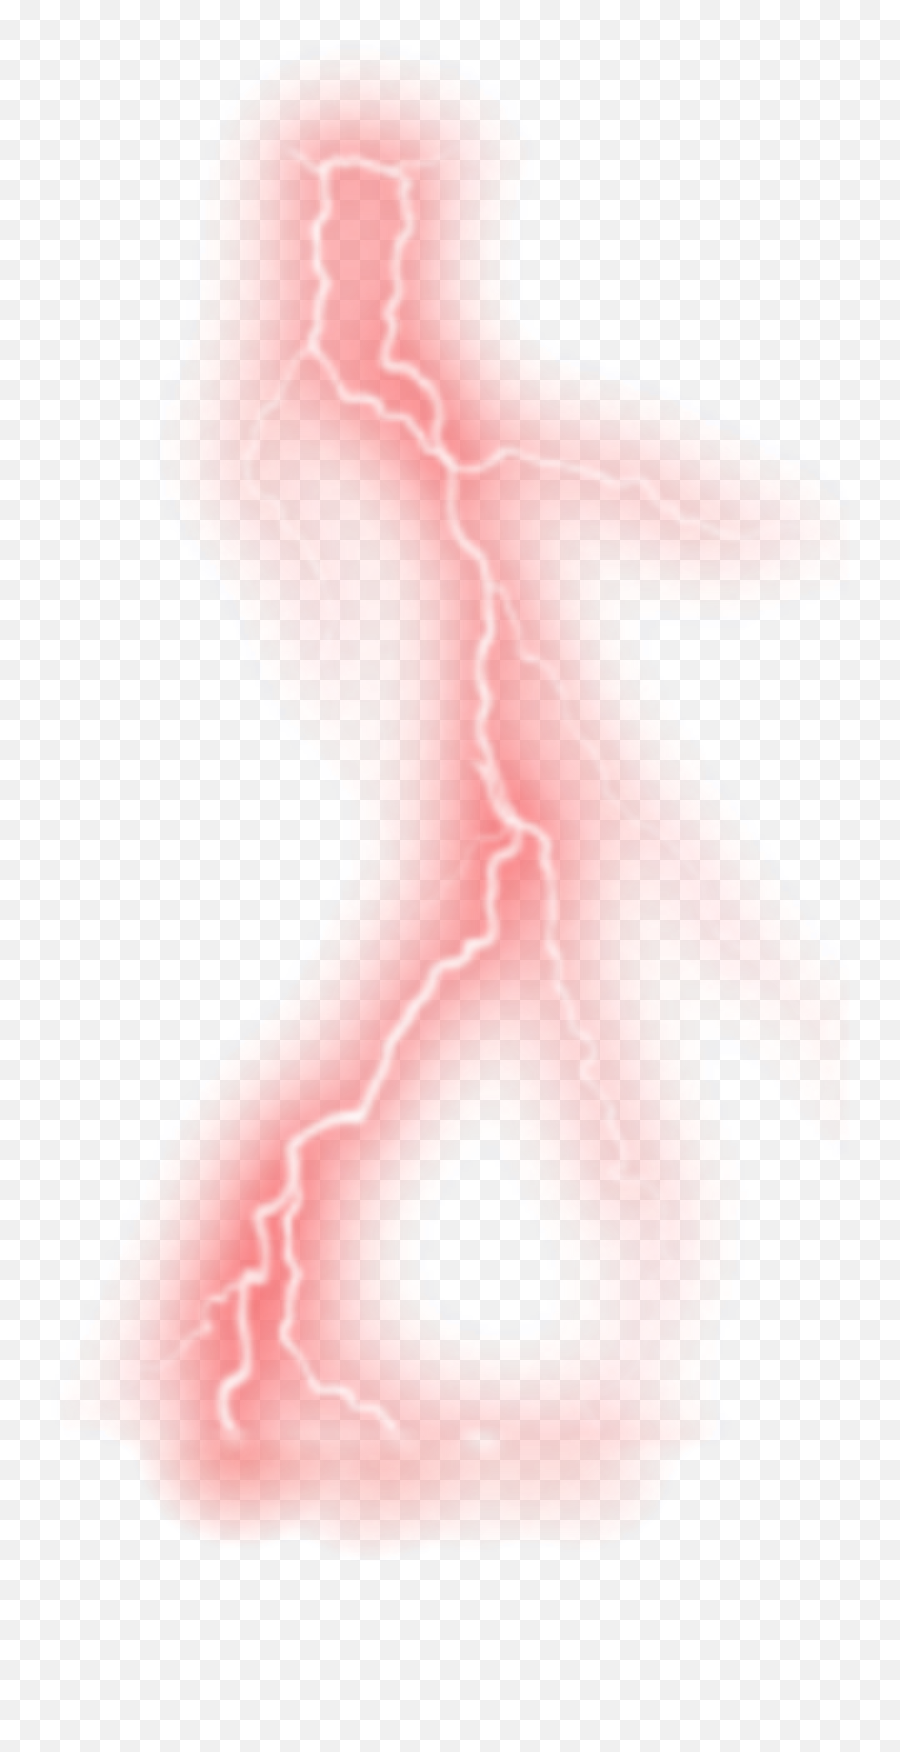 Red Lightning - Illustration Png,Red Lightning Transparent